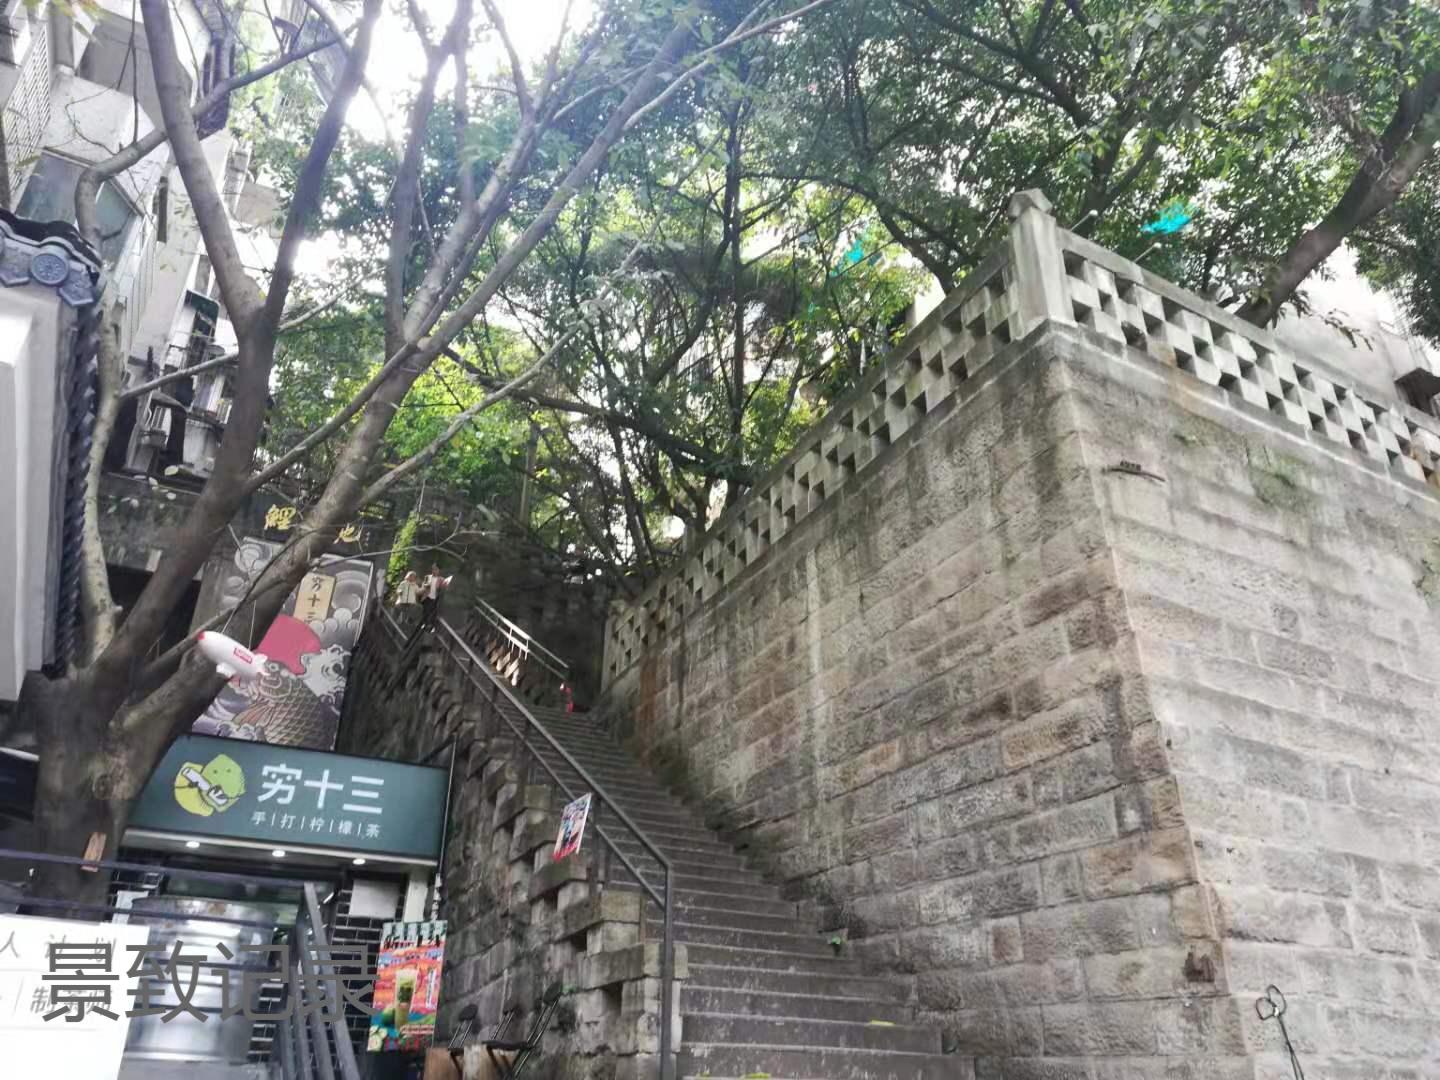 景致记录：门面有特色，塑像随意摆放，重庆江北之美，你察觉了吗